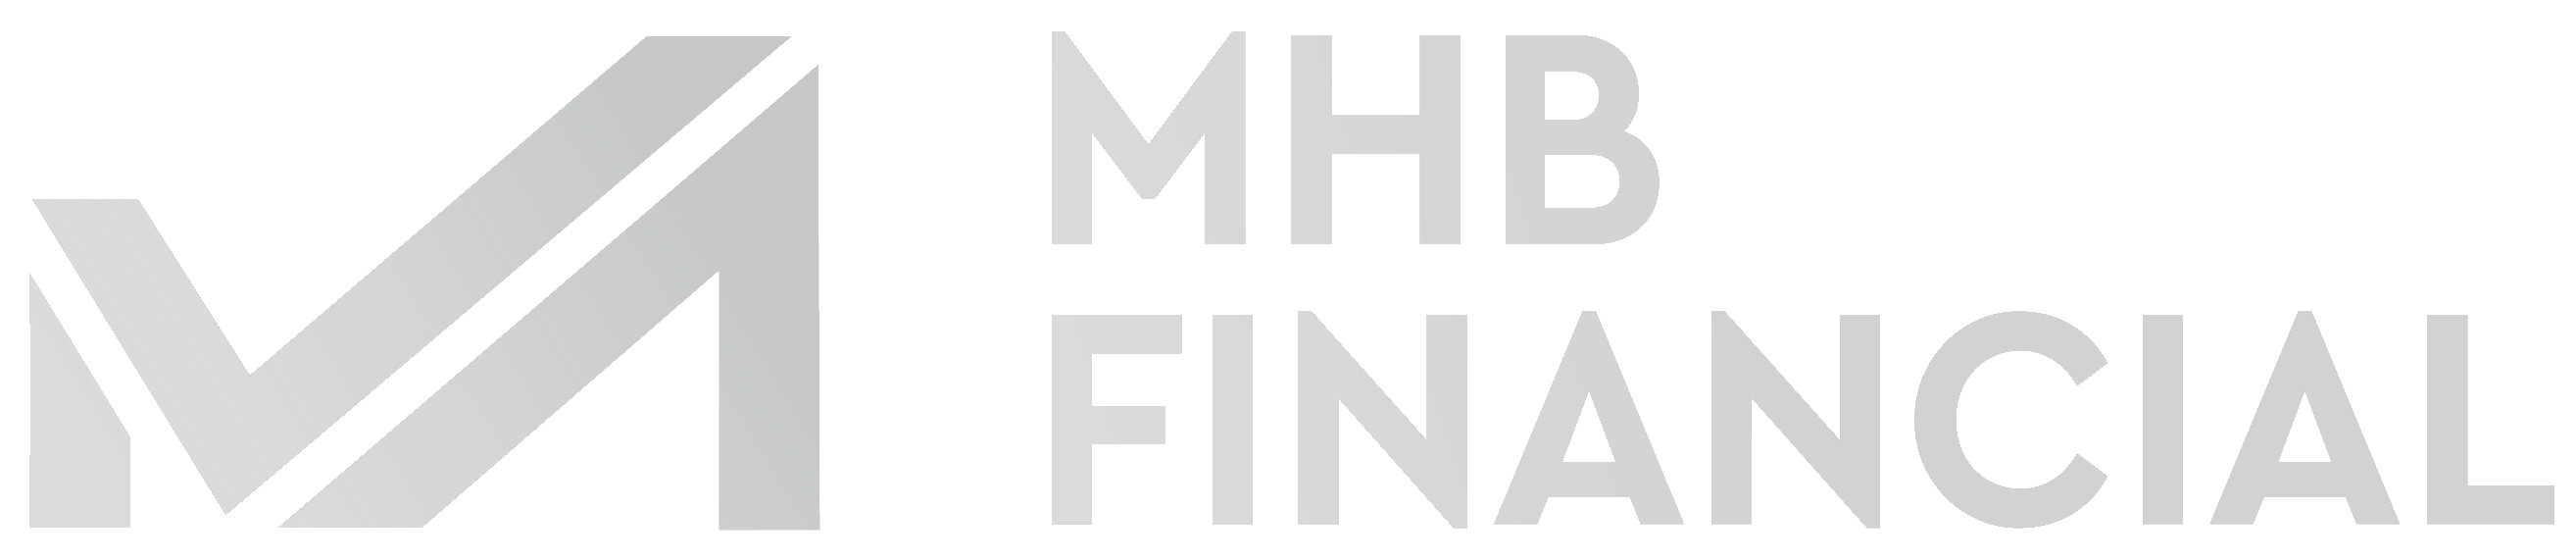 MHB Financial